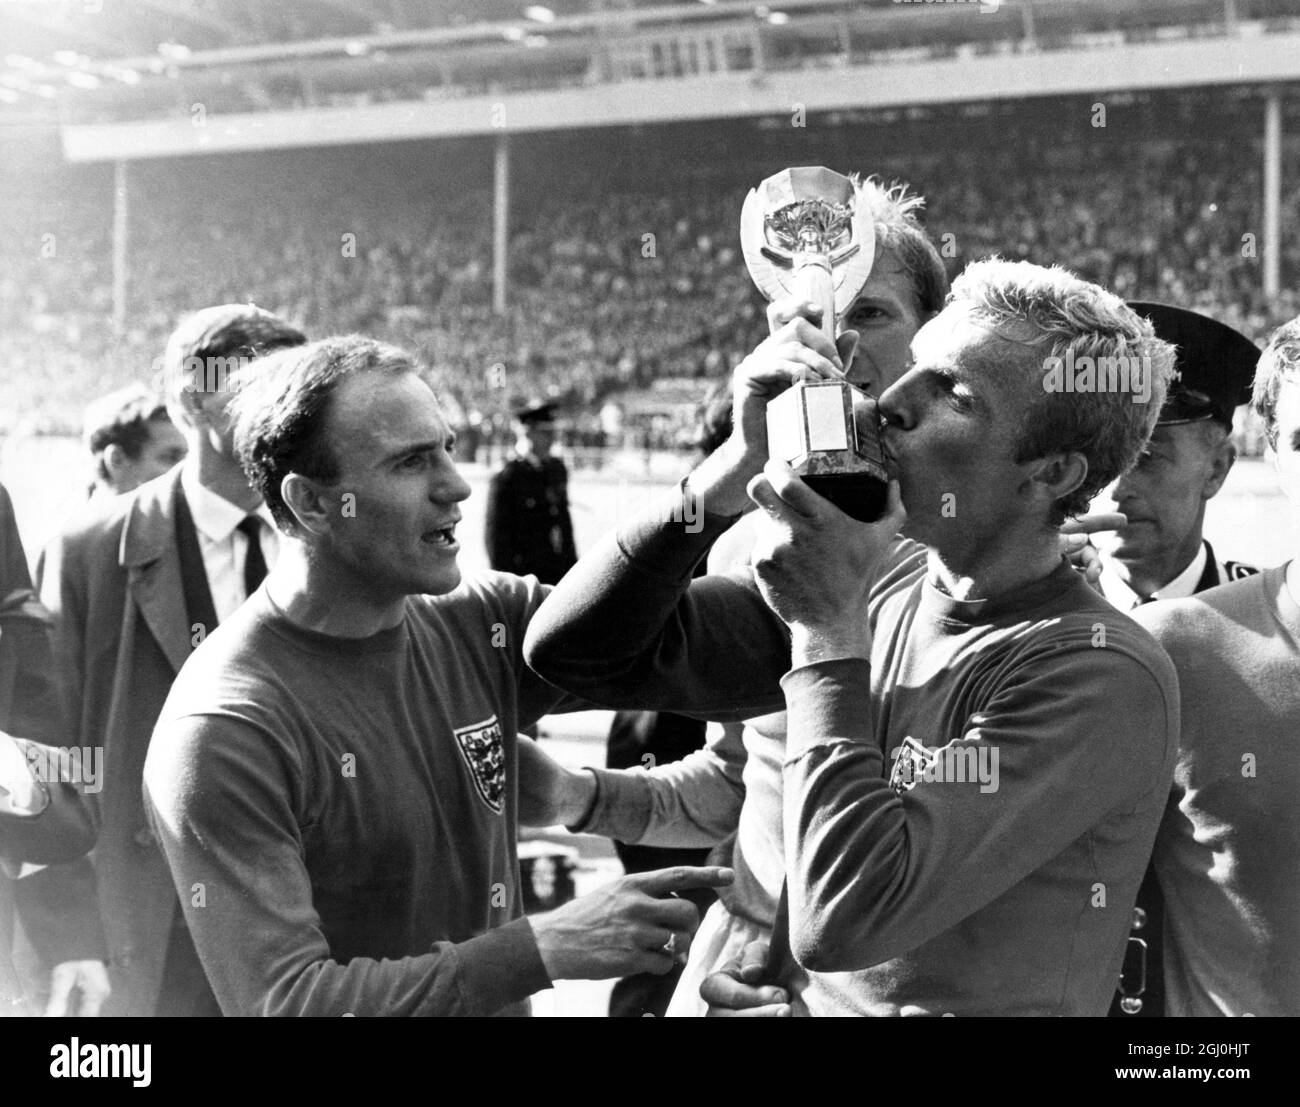 Finale della Coppa del mondo 1966 Inghilterra / Germania occidentale Bobby  Moore, capitano di calcio inglese, bacia il Trofeo Jules Rimet dopo che  l'Inghilterra ha vinto la partita della Coppa del mondo